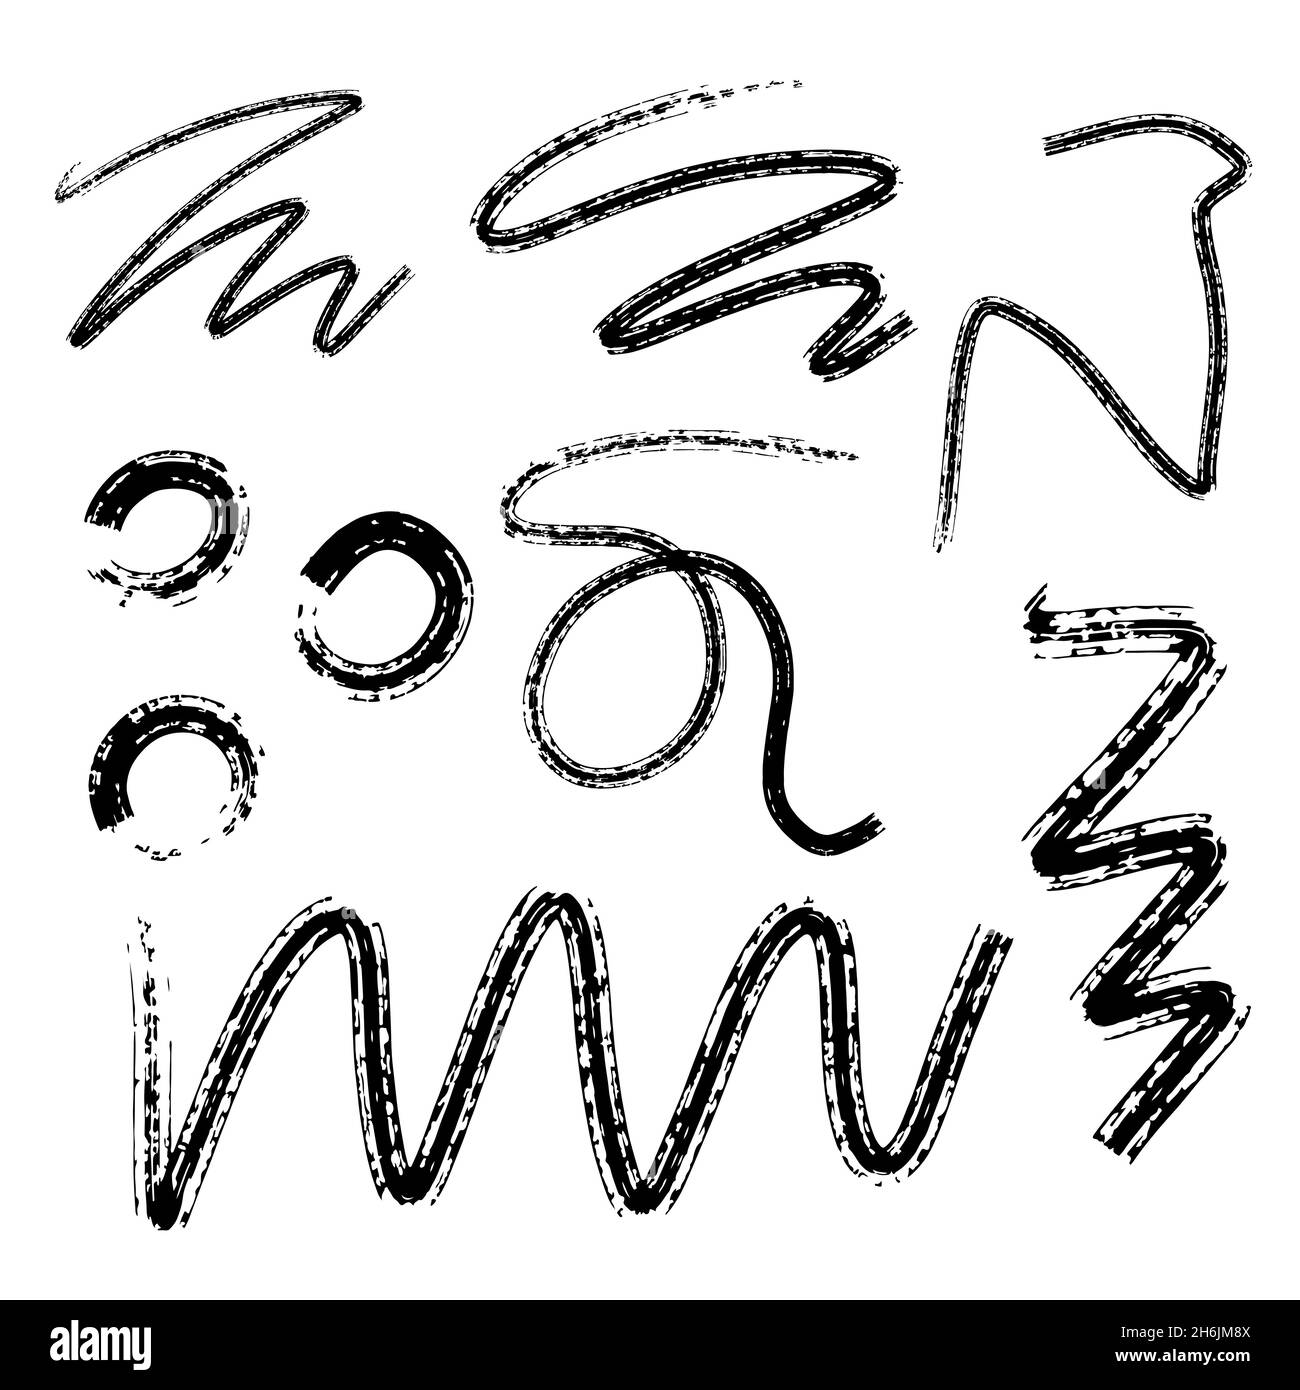 Bürstenset, schwarze und weiße Linie wischst trockenen Pinselstrich mit Farbe, dicke Posterlinie für Design Stock Vektor